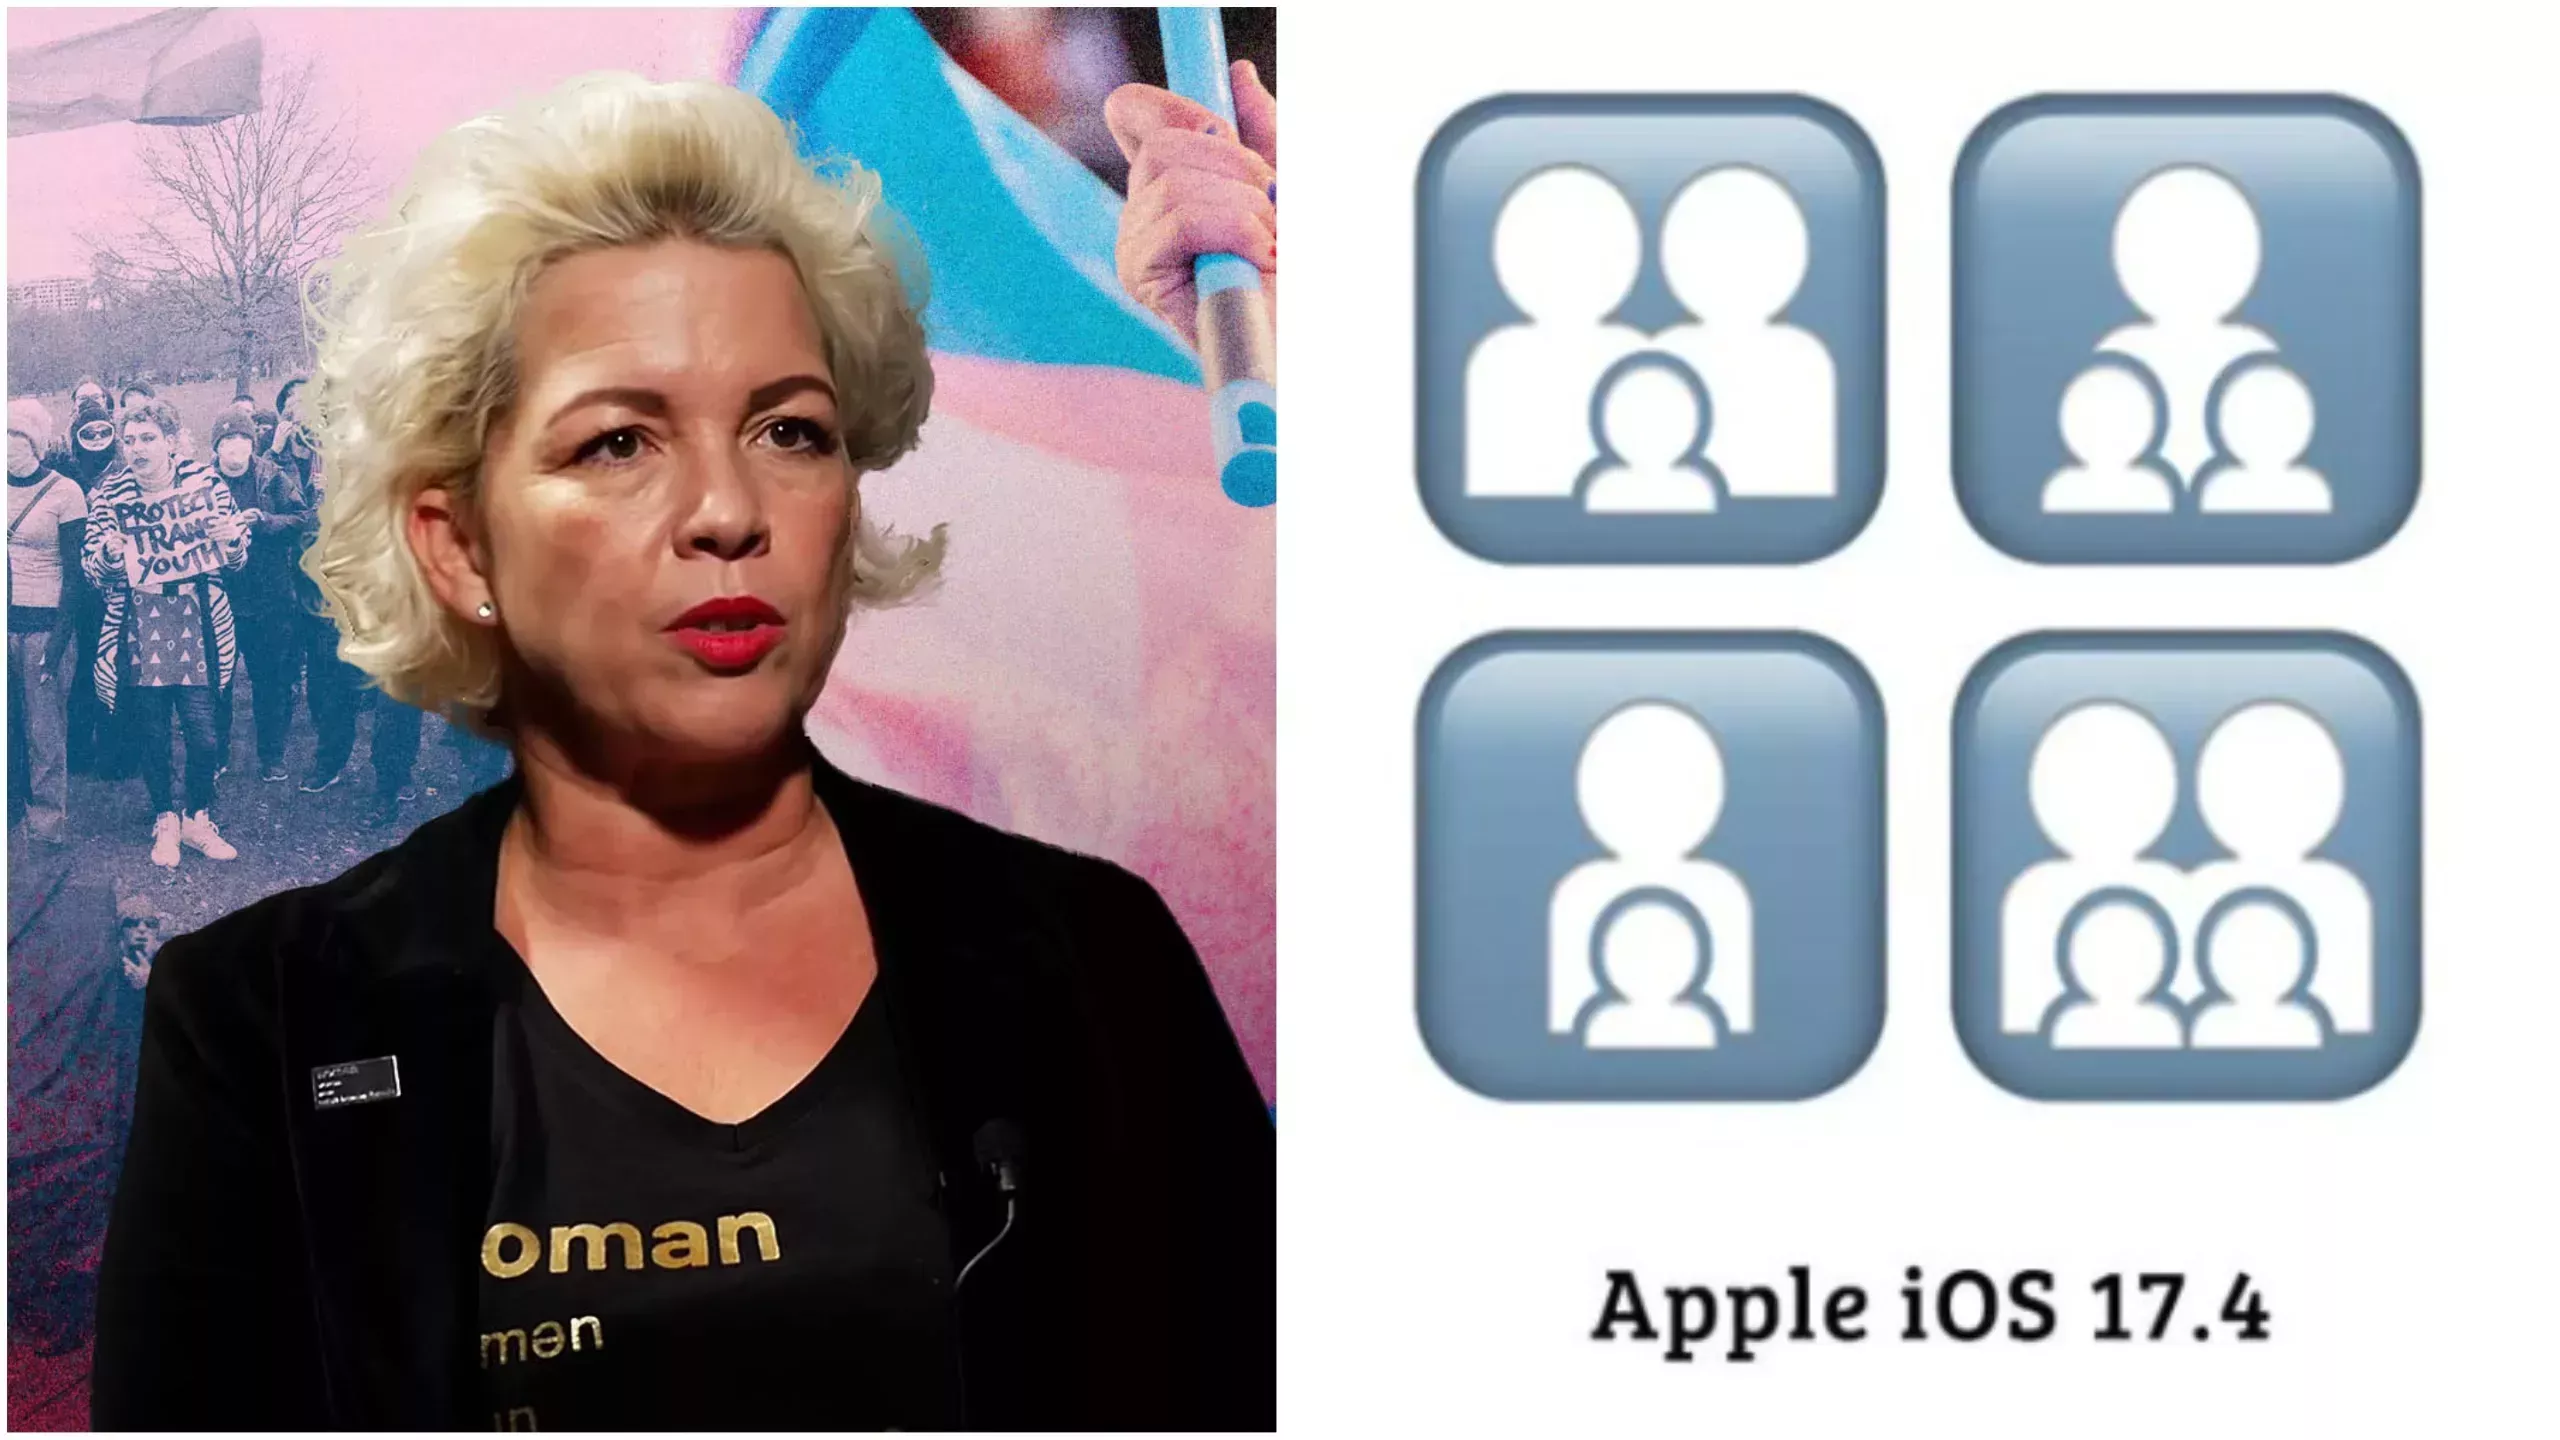 La nueva gama de emoji de Apple incluye niños de género neutro, y los de siempre echan humo.